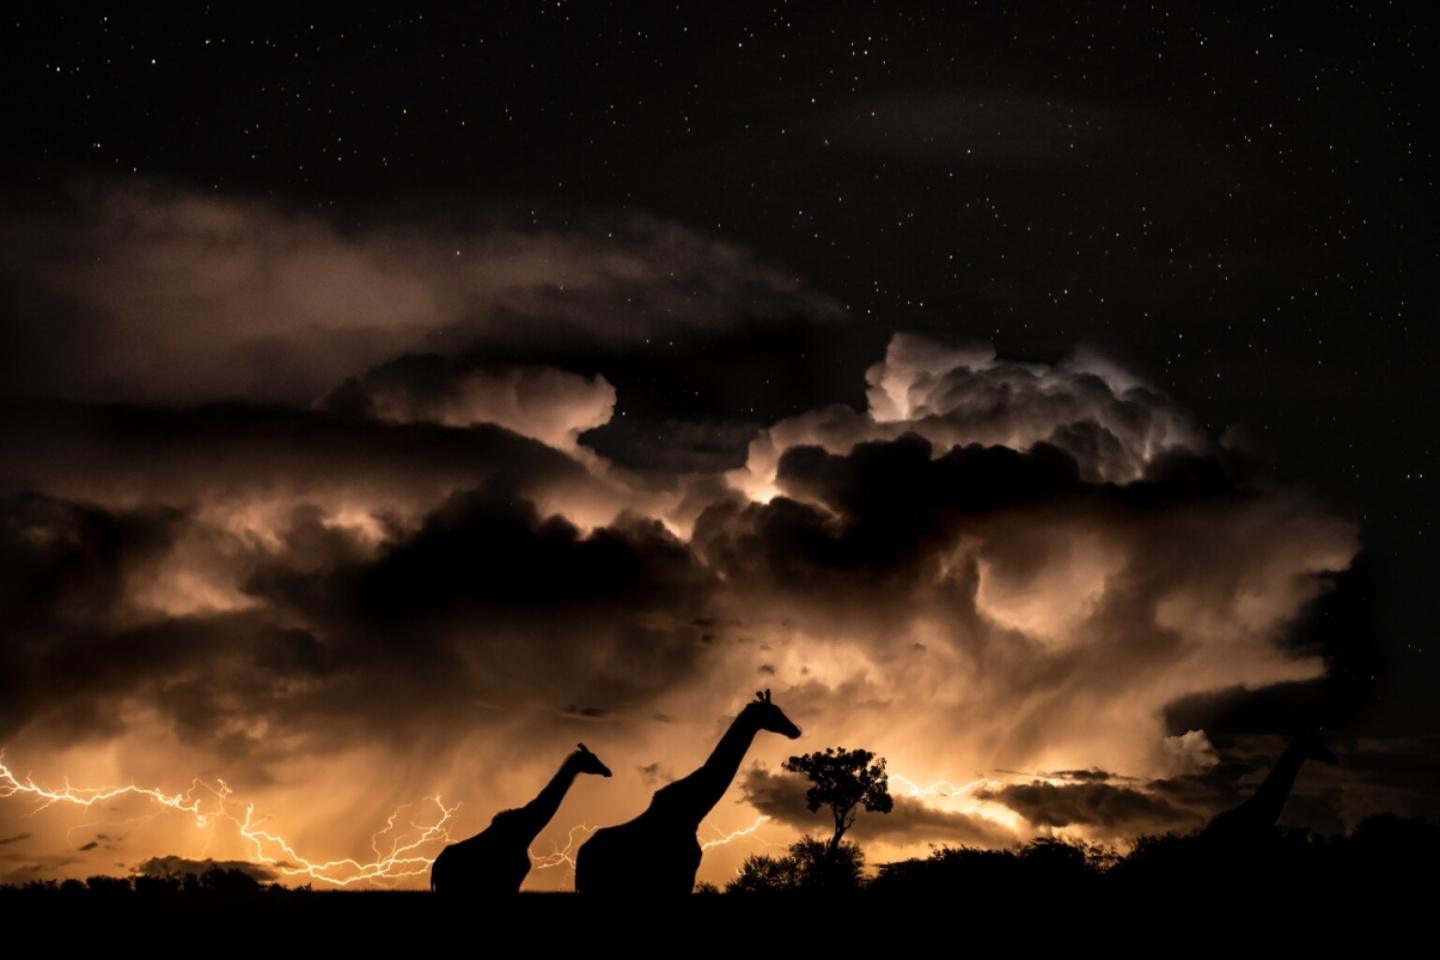 «Гроза в саванне». Поощрительная премия в категории "Животные в их среде обитания". Заповедник Масаи-Мара, Кения. Фото: © Maymoni Maya